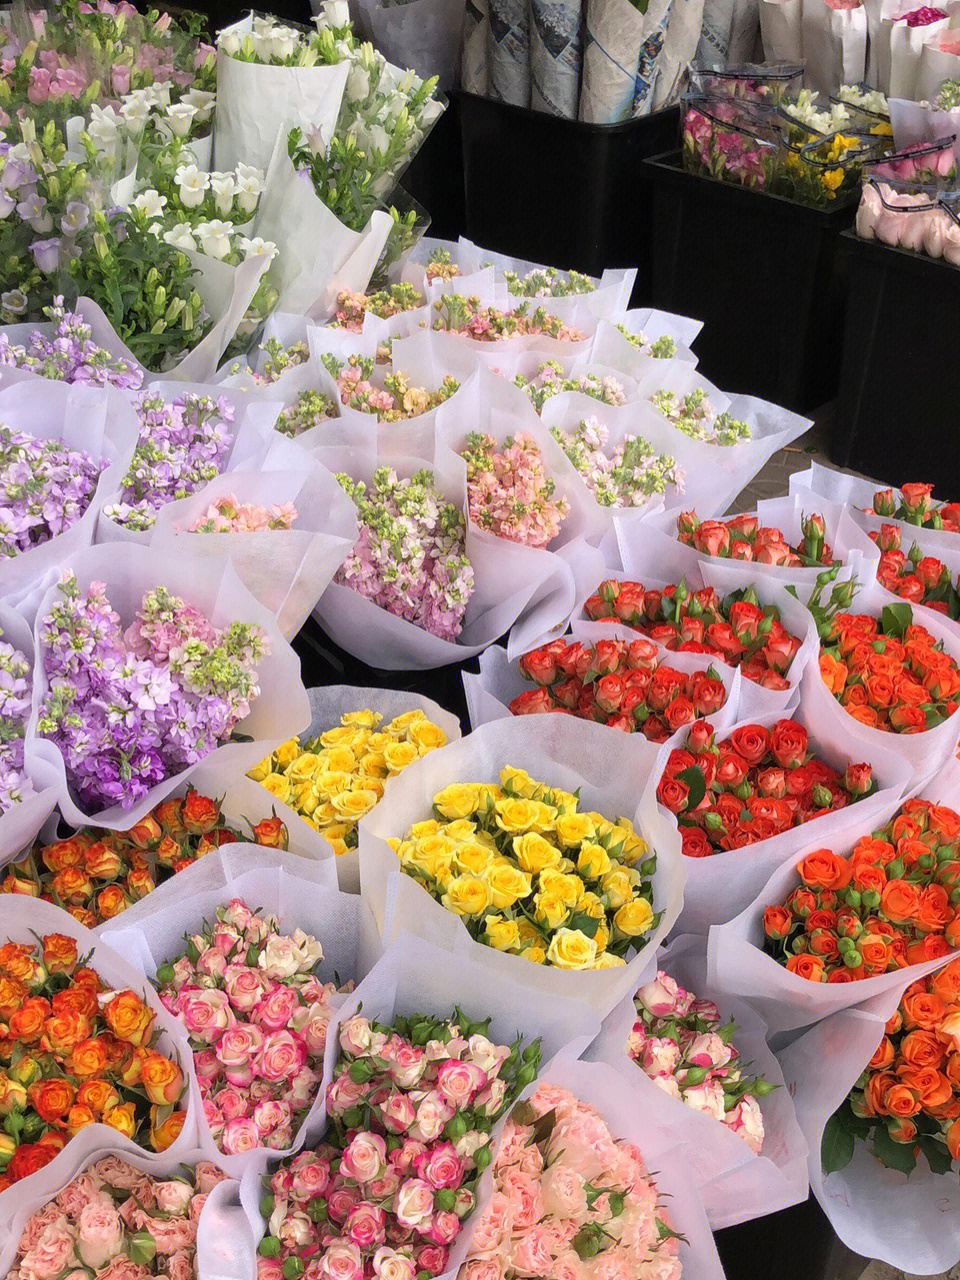 朱雀花卉市场图片